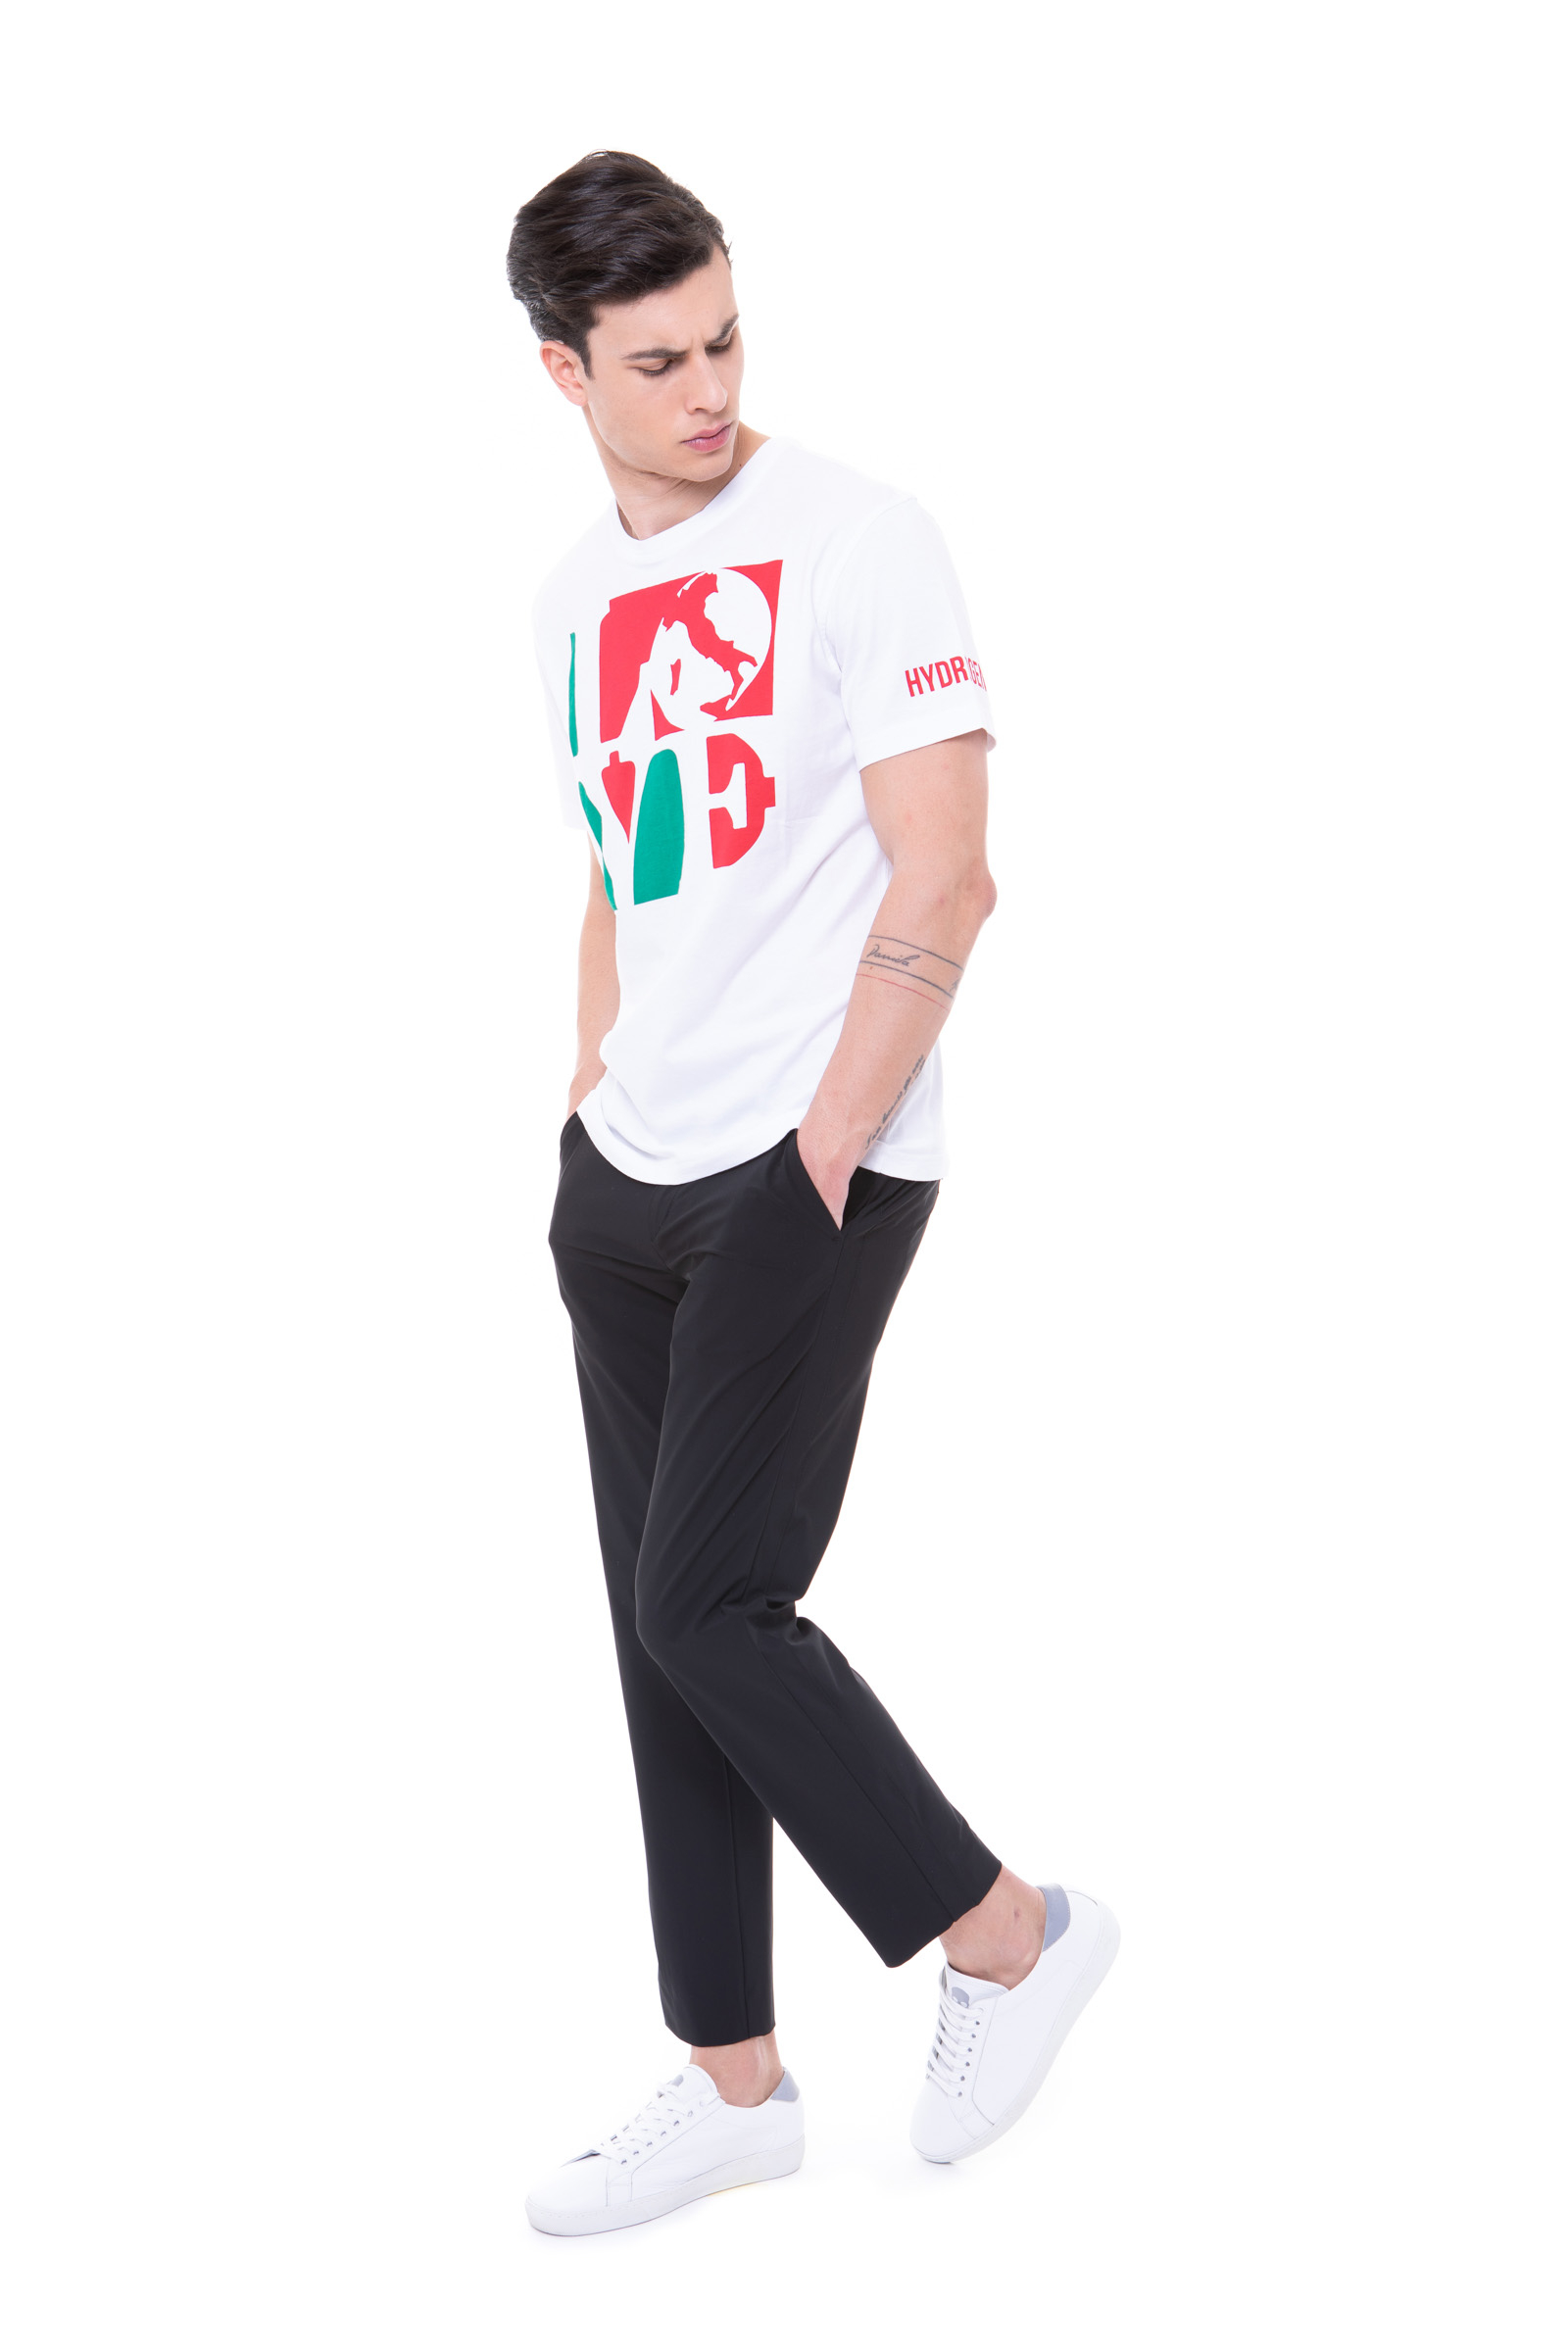 LOVE ITALIA TEE - Abbigliamento - Outlet Hydrogen - Abbigliamento sportivo